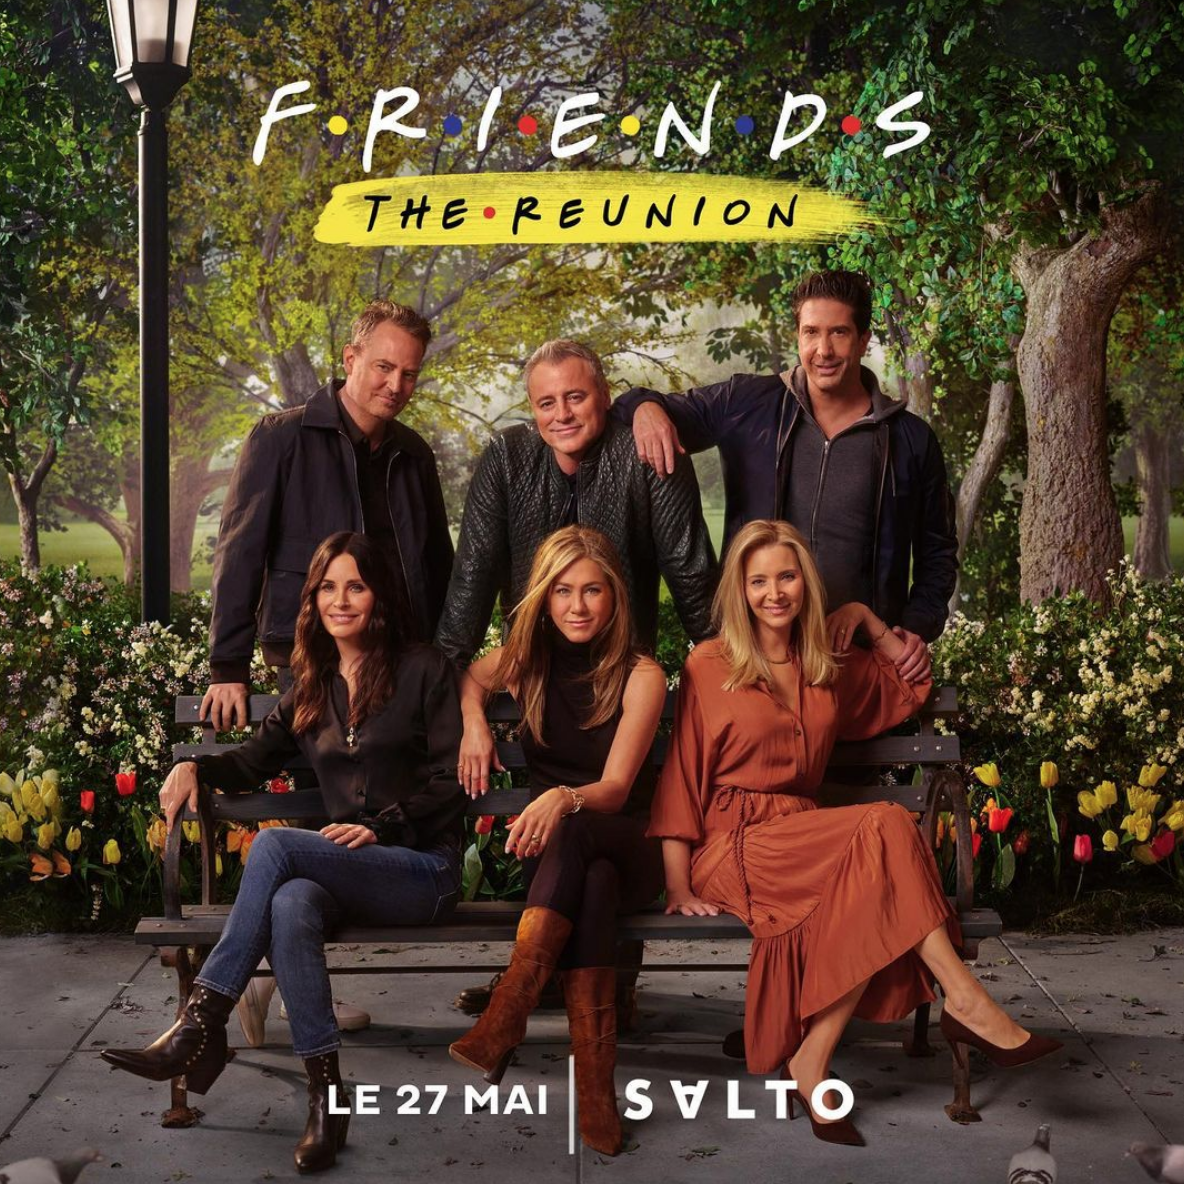  Salto diffusera l'épisode "The Reunion" de Friends en France @ Instagram